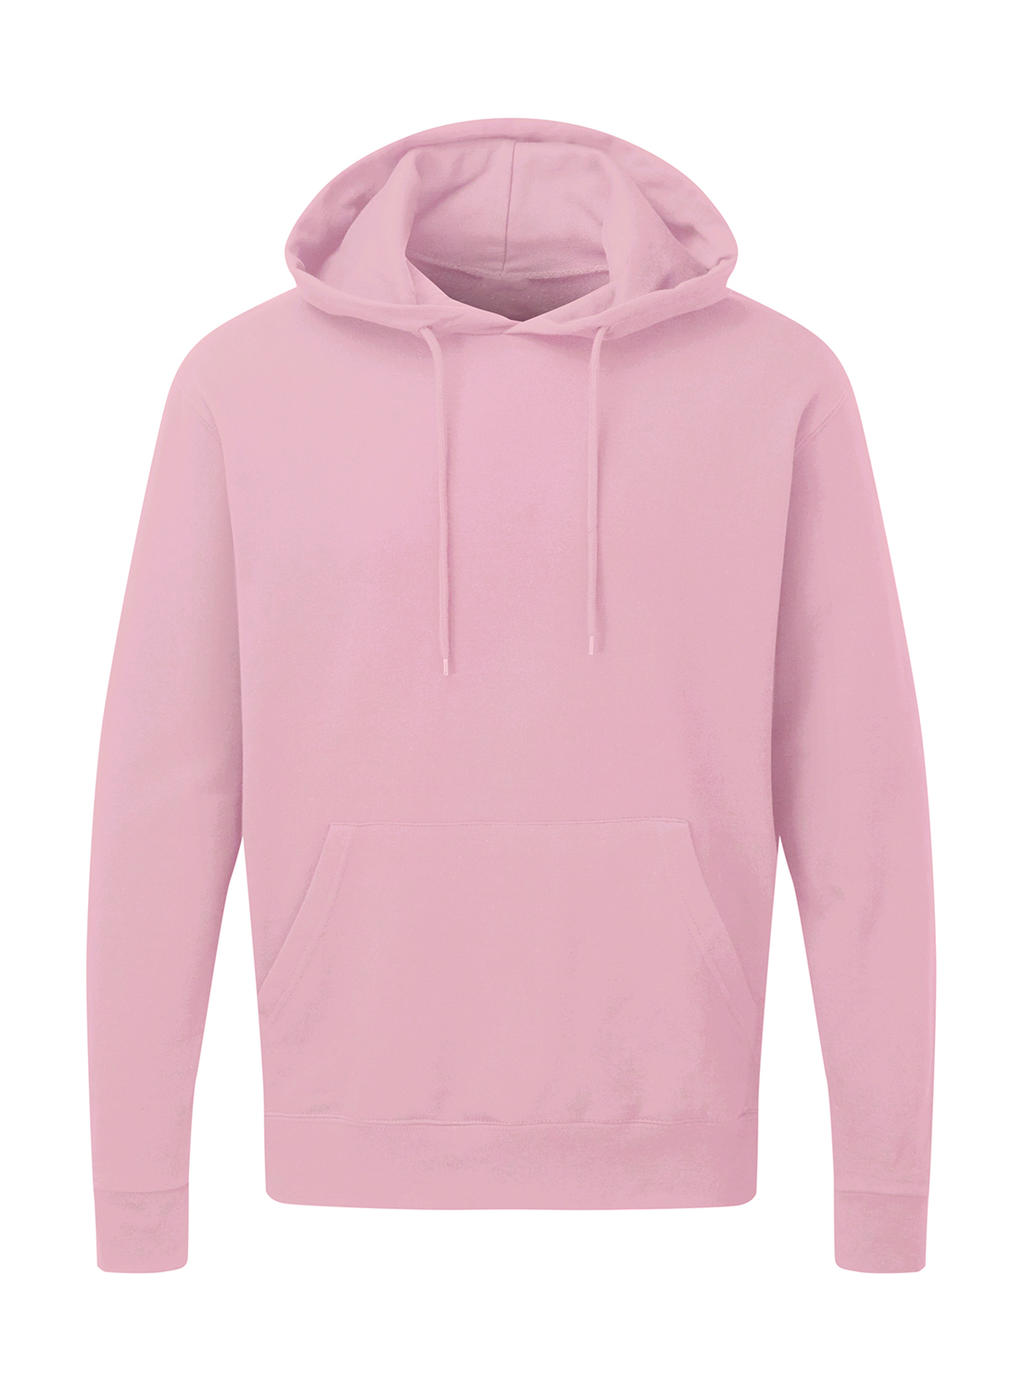  Mens Hooded Sweatshirt in Farbe Pink